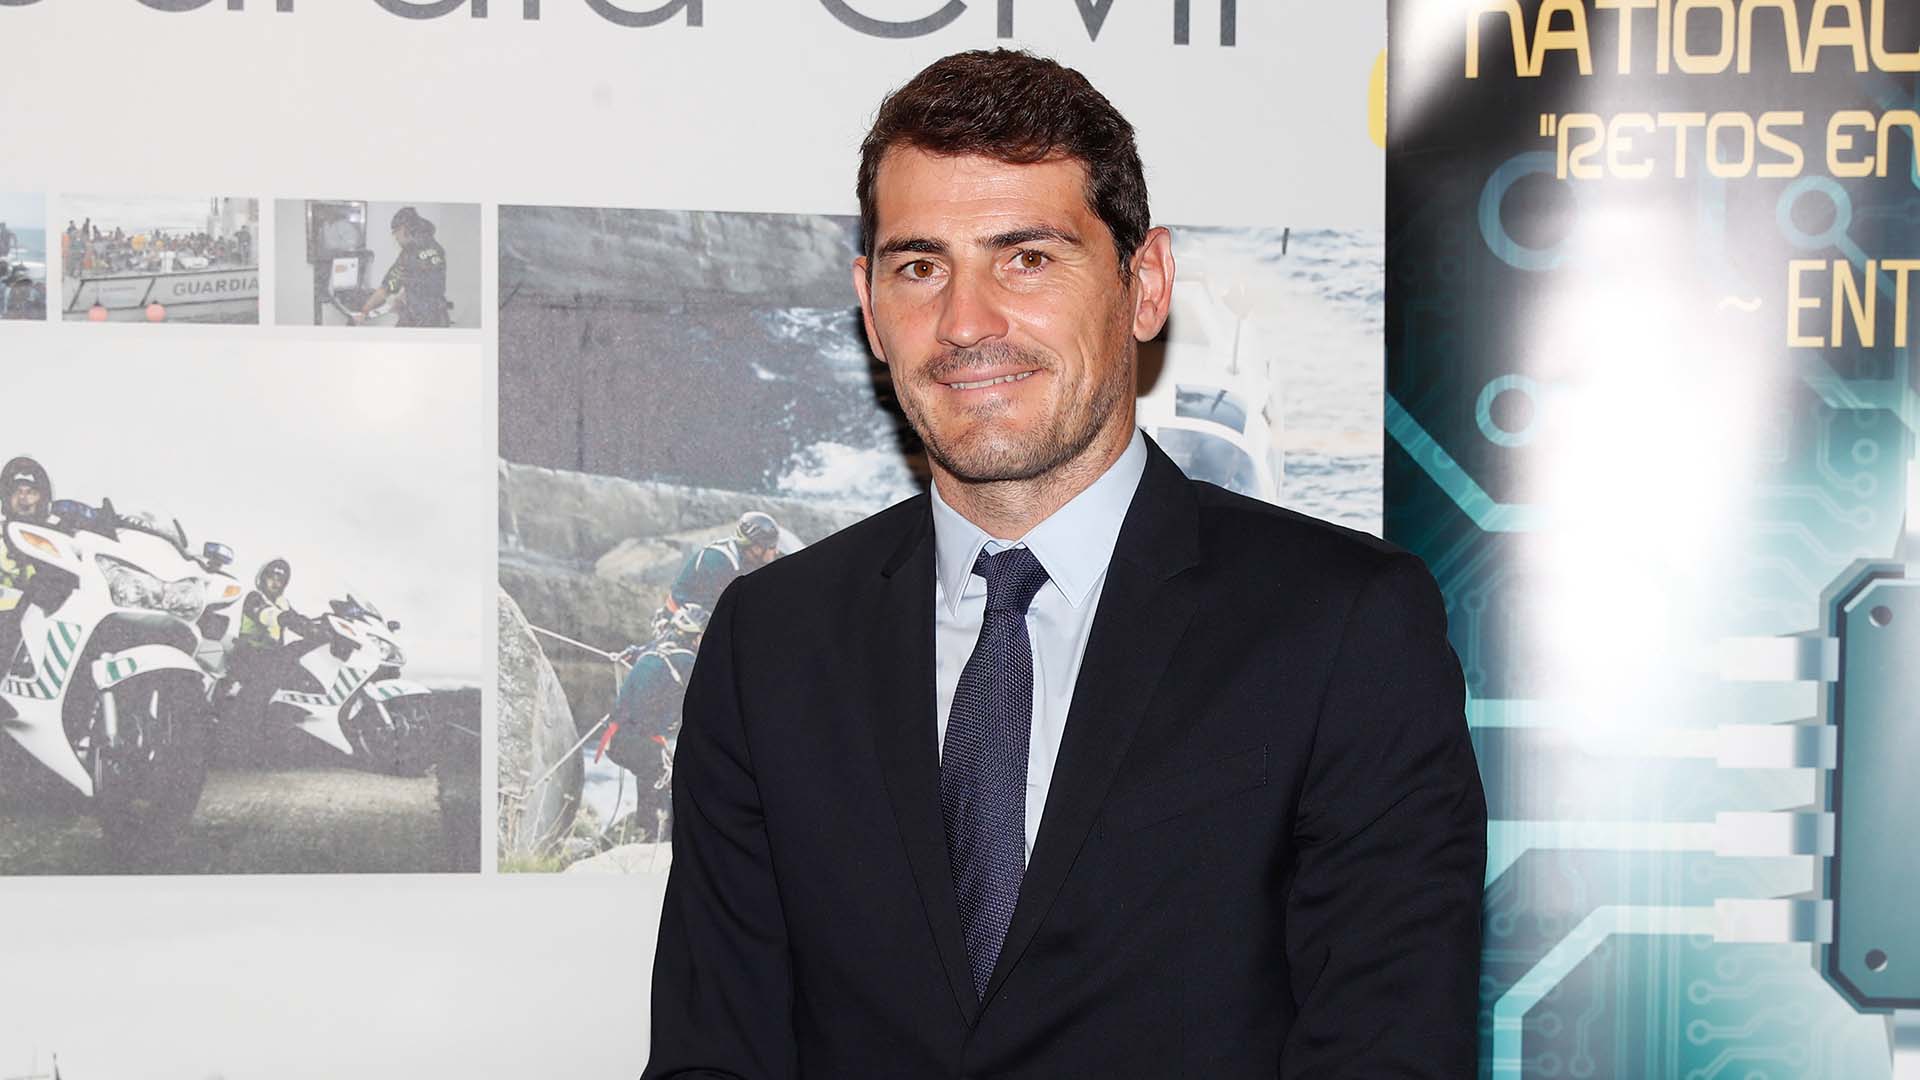 Former soccerplayer Iker Casillas during inauguration of 3rd edition Liga de Retos en el Ciberespacio in Madrid on Thursday, 16 September 2021